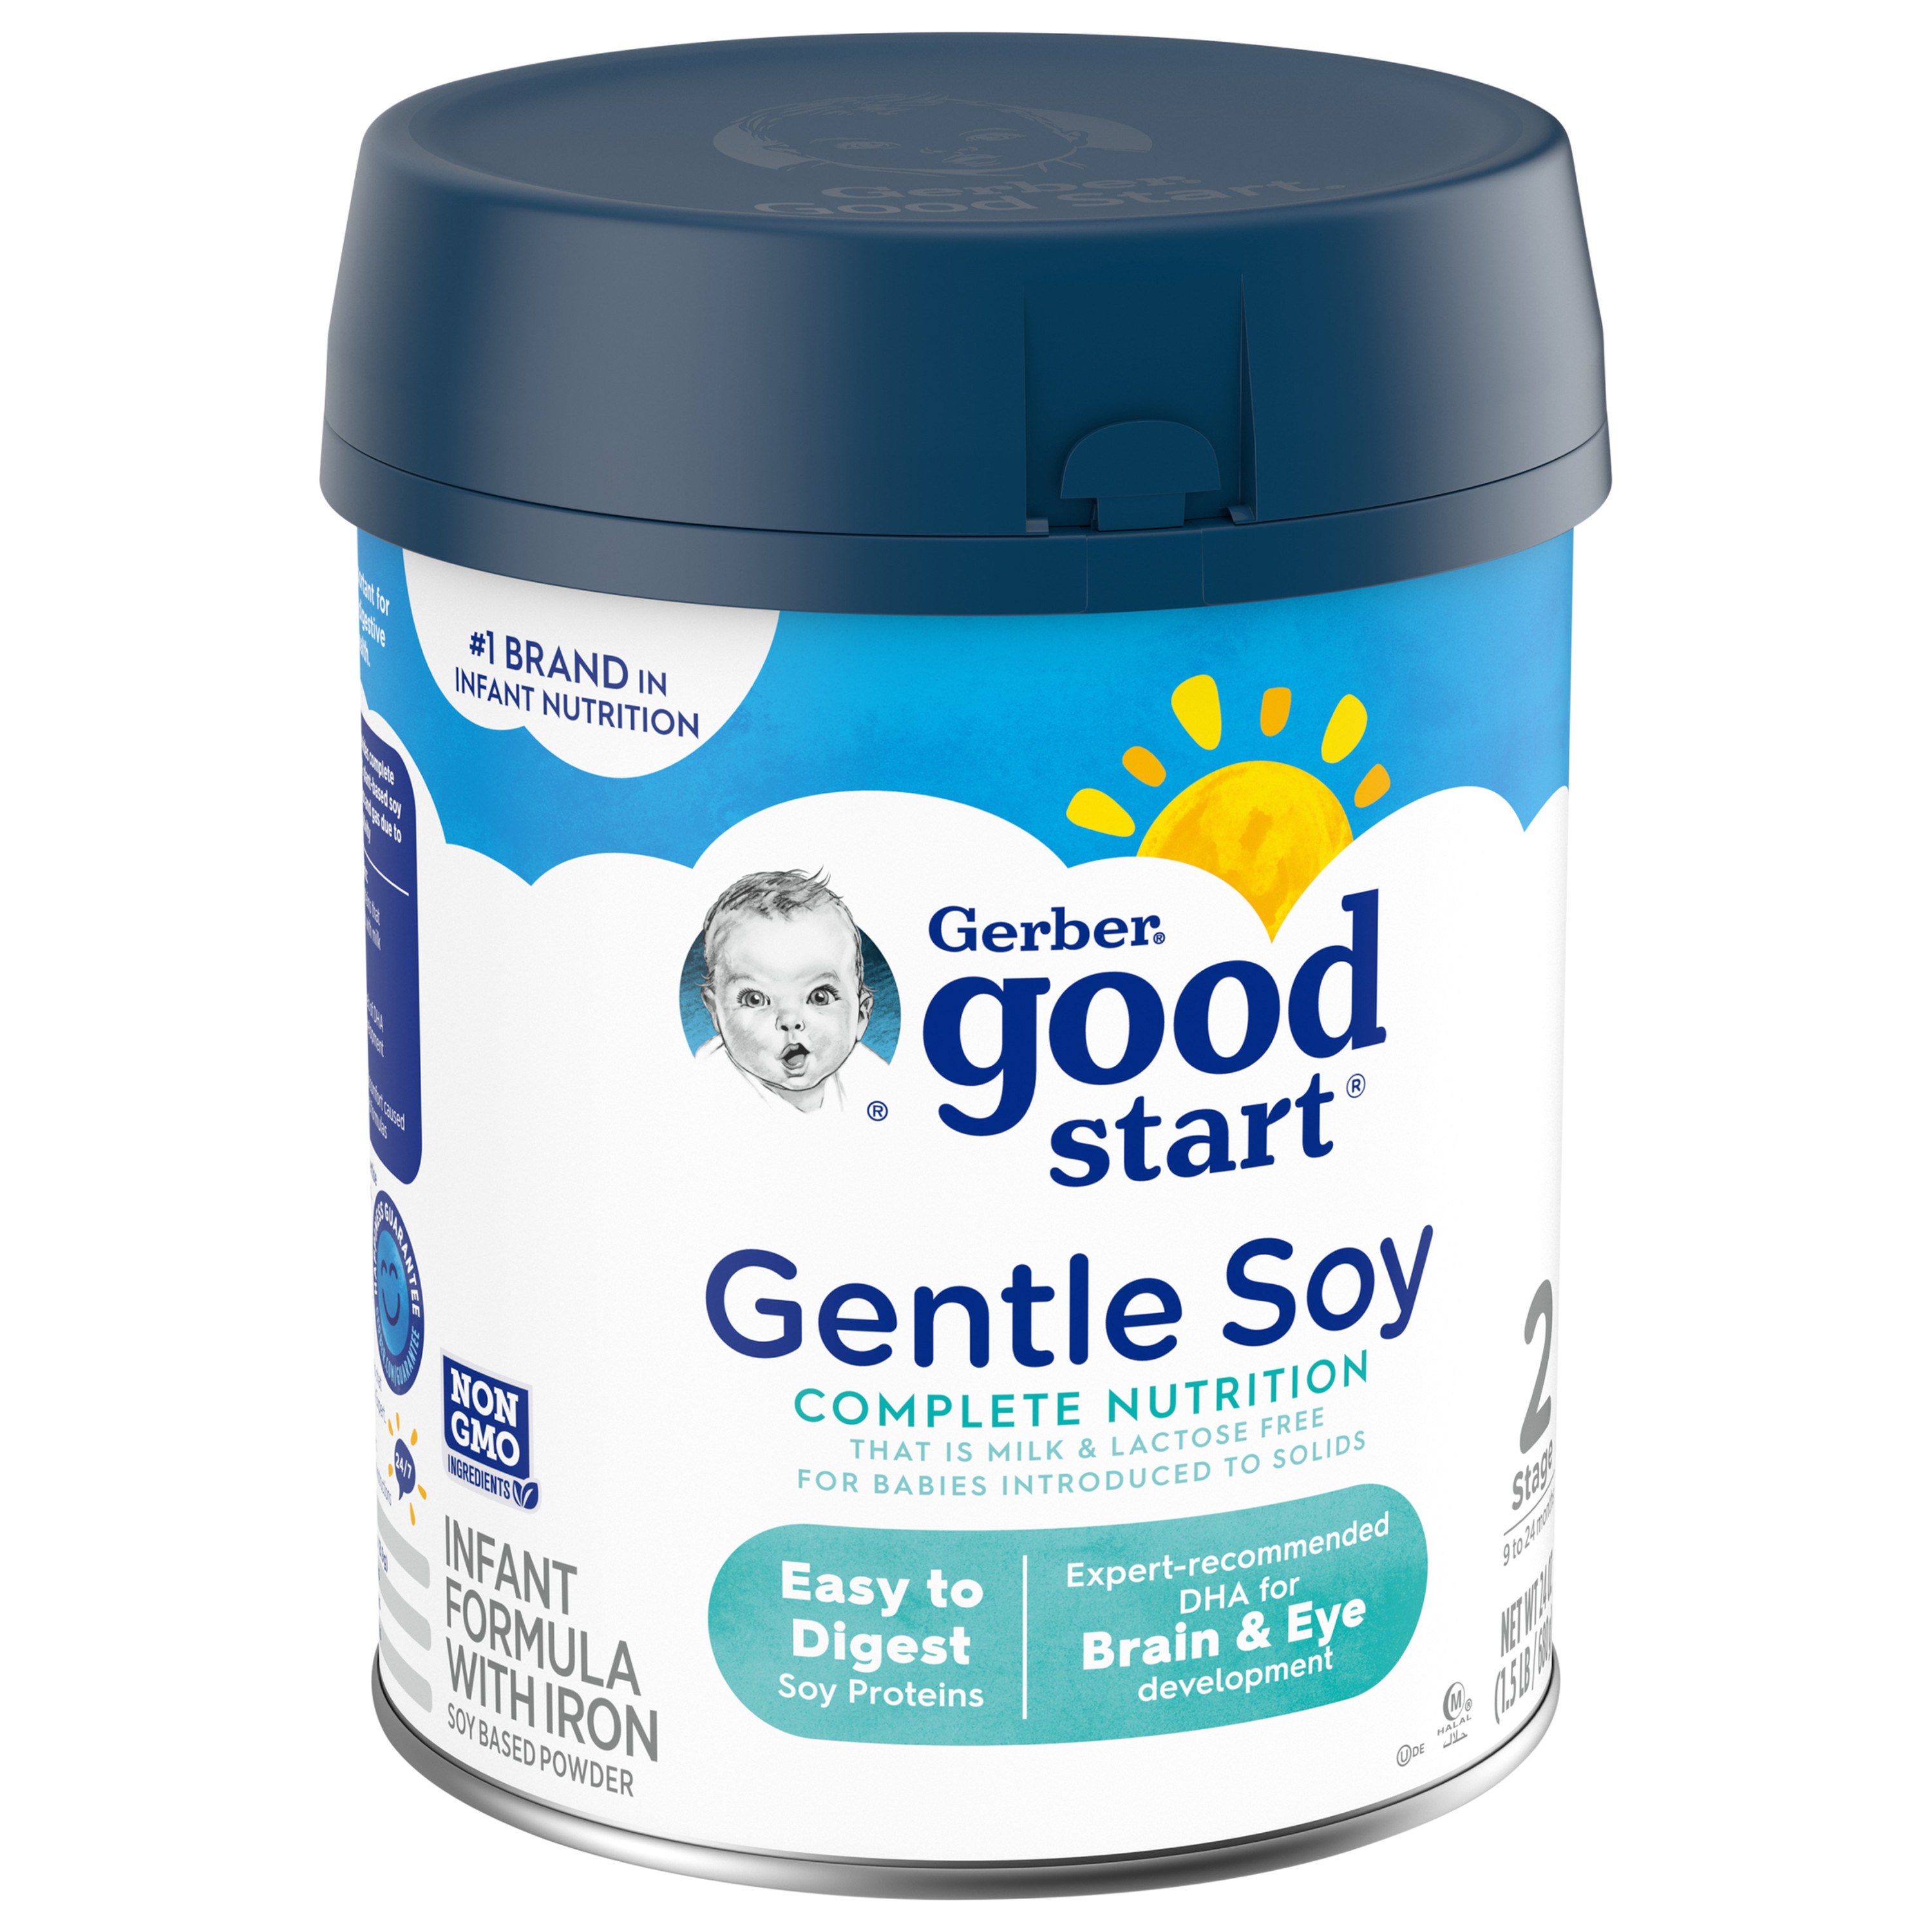 Gerber Good Start Gentle Soy Powder Infant and Toddler Formula, 24 oz Canister - image 5 of 8